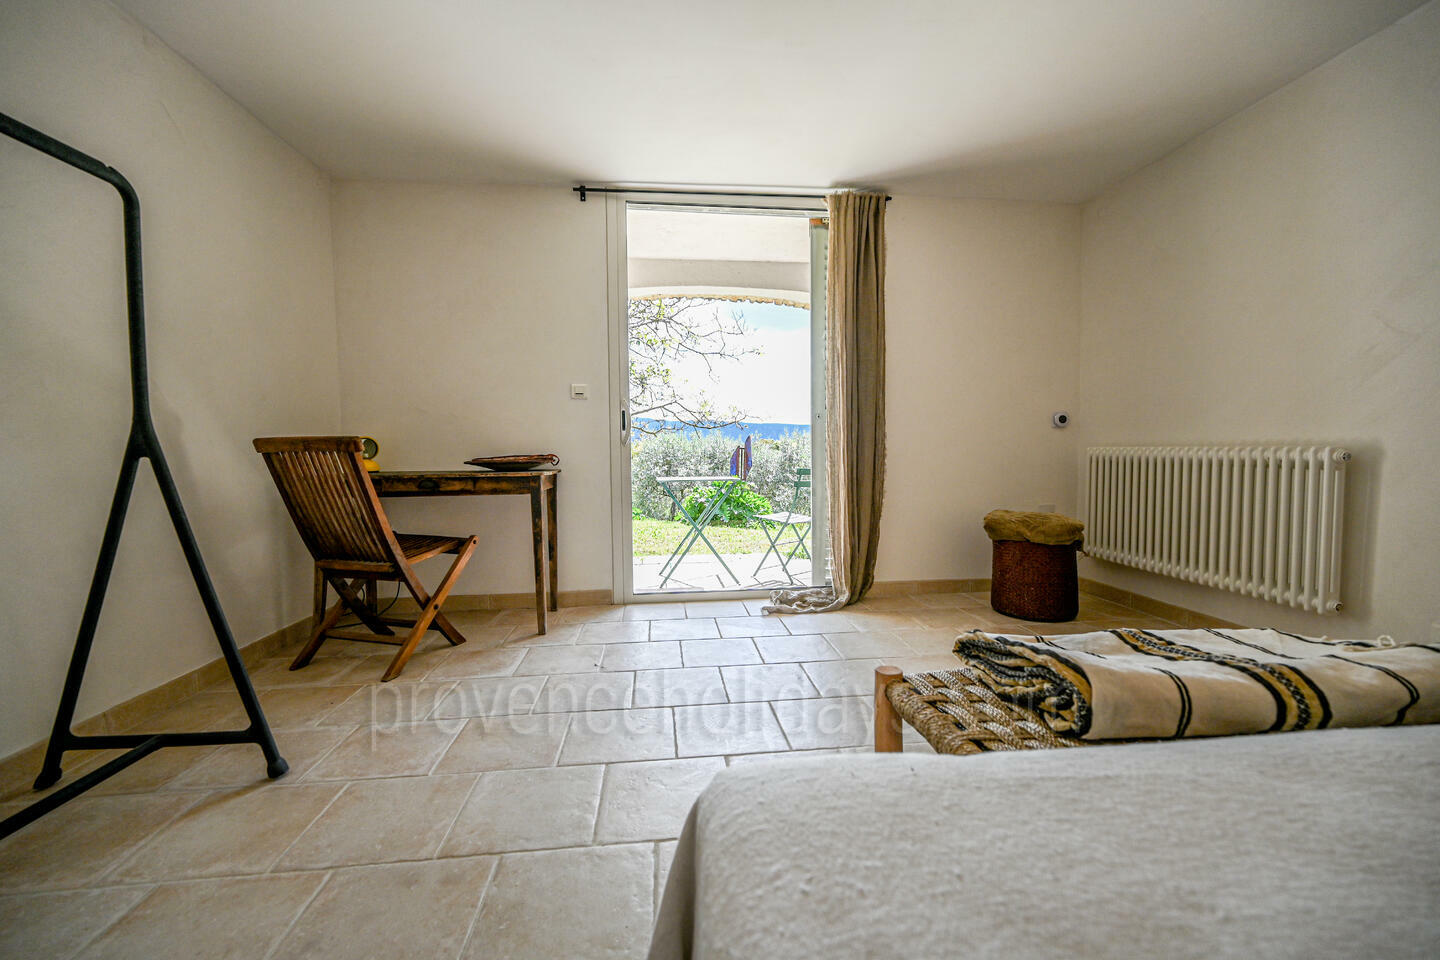 40 - Une Maison en Provence: Villa: Bedroom